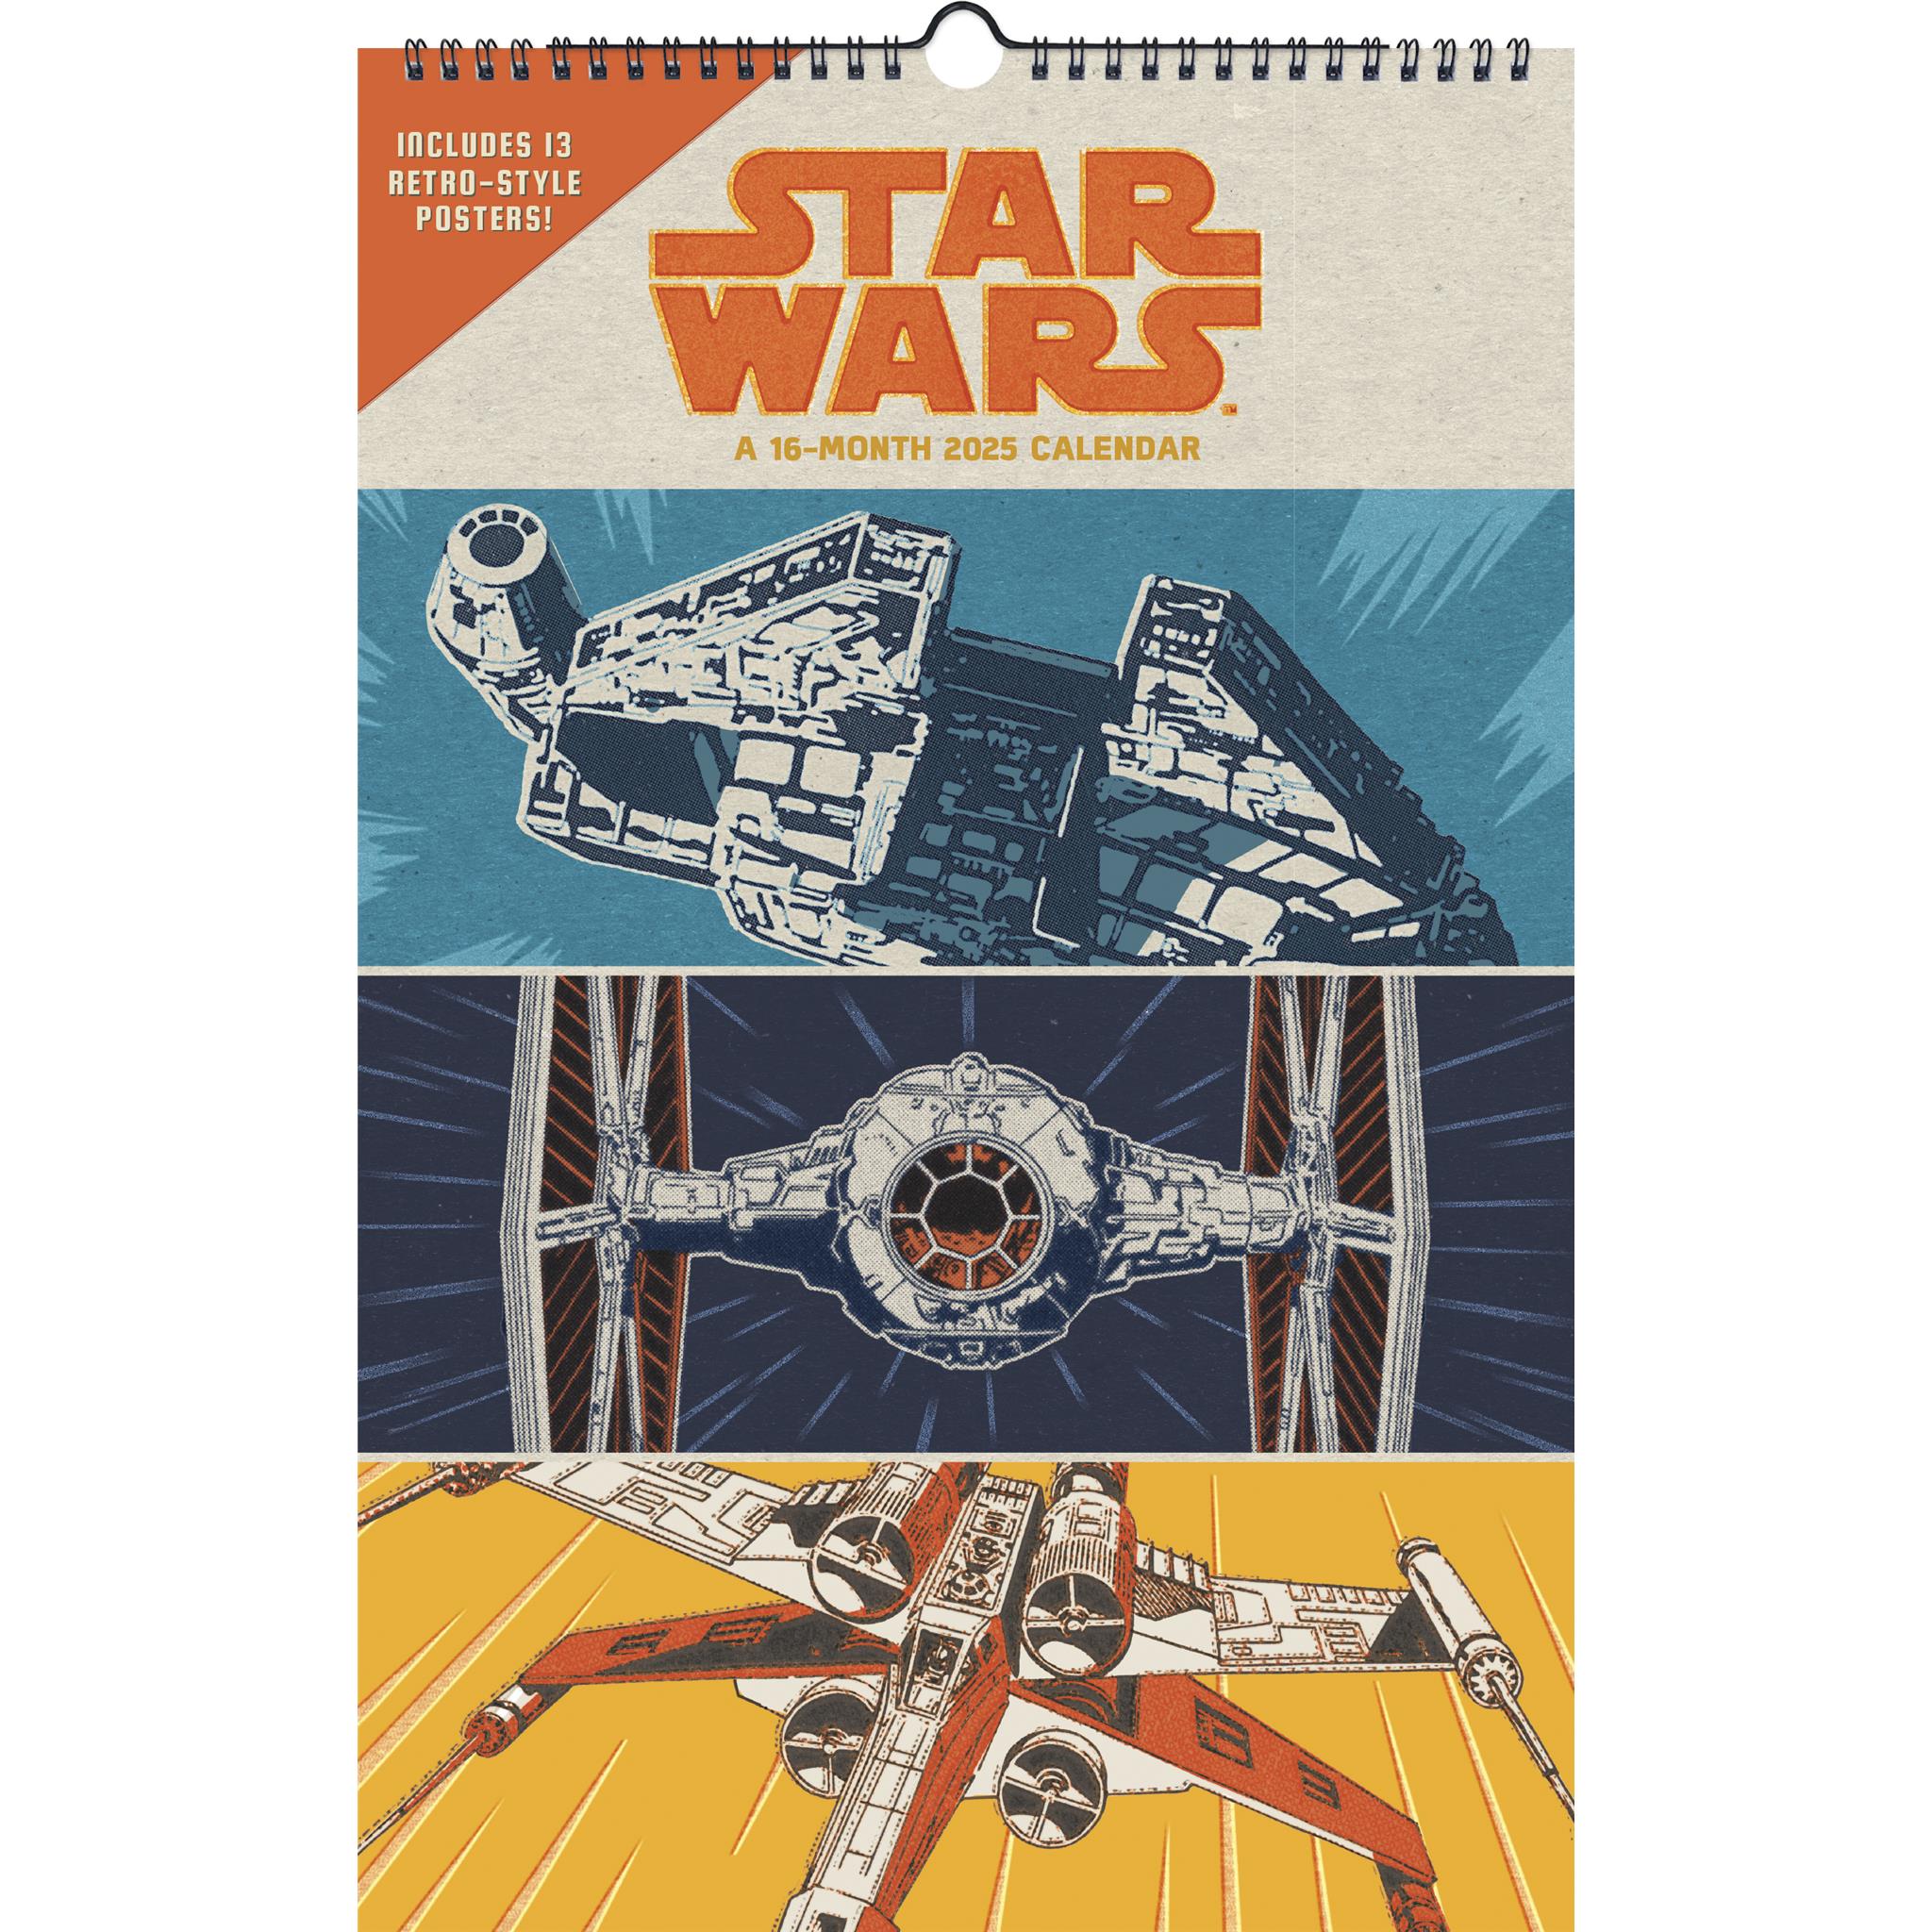 Star Wars Poster 2025 Calendar